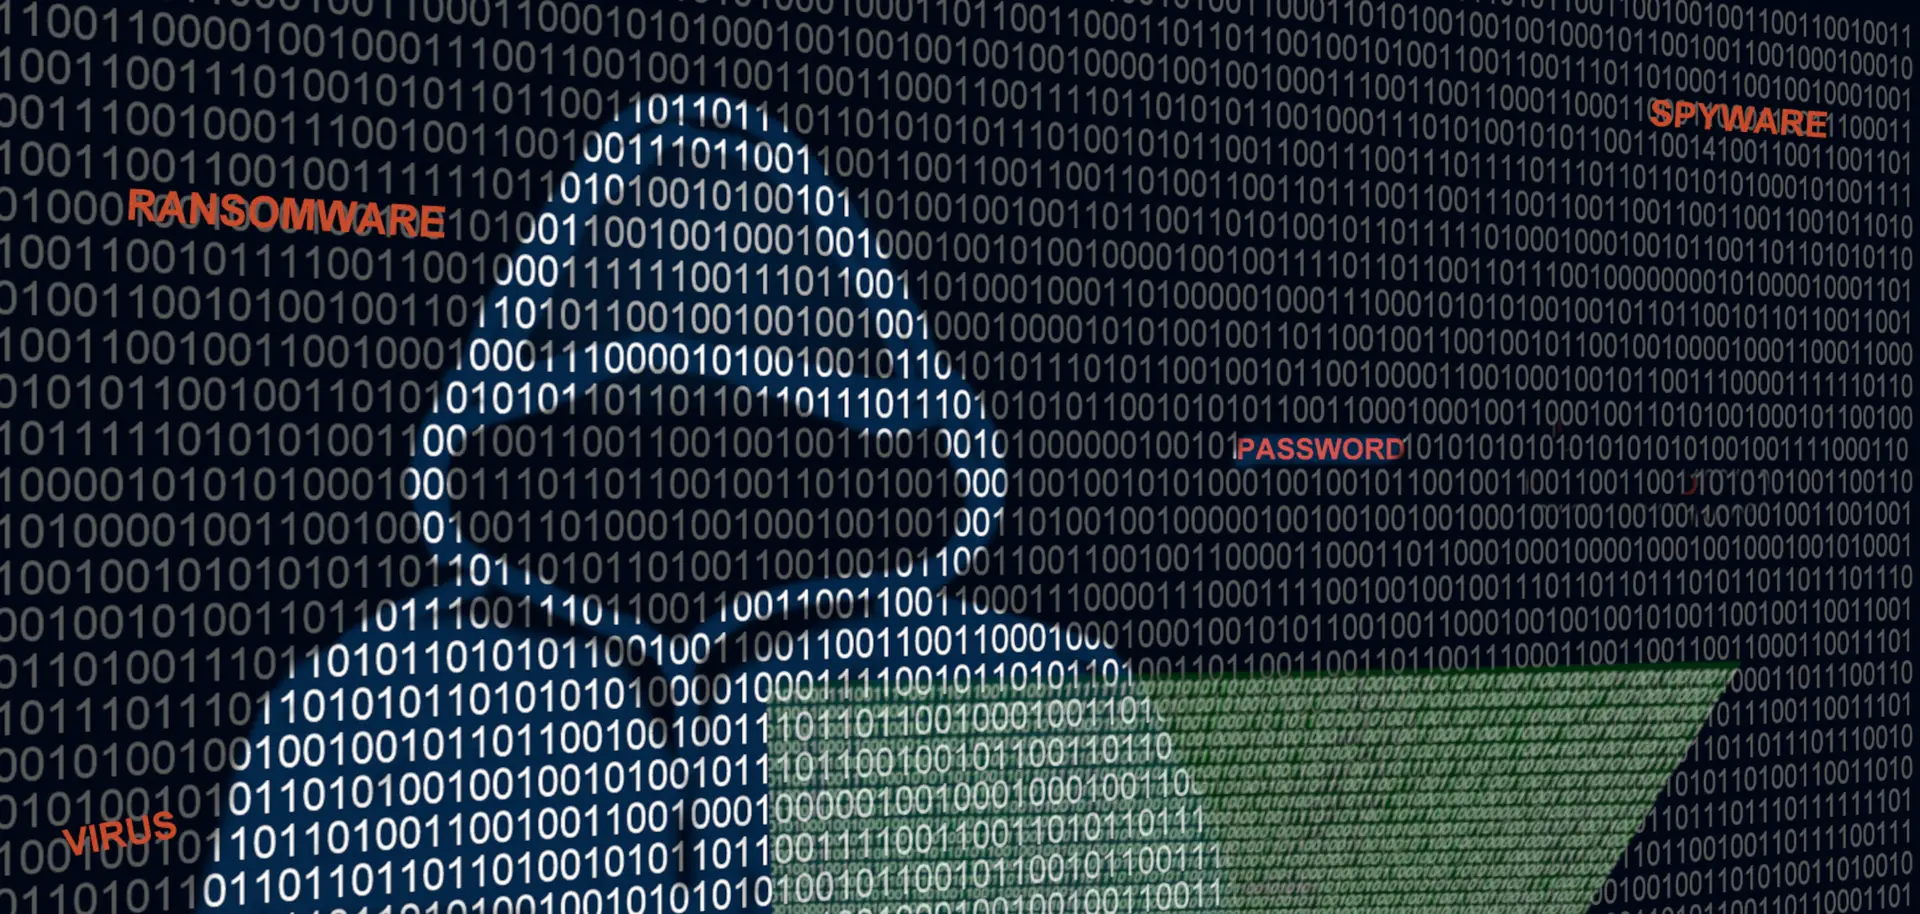 Governo avisa: ataques de hackers pró-russos contra Portugal são “muitos e todos os dias”